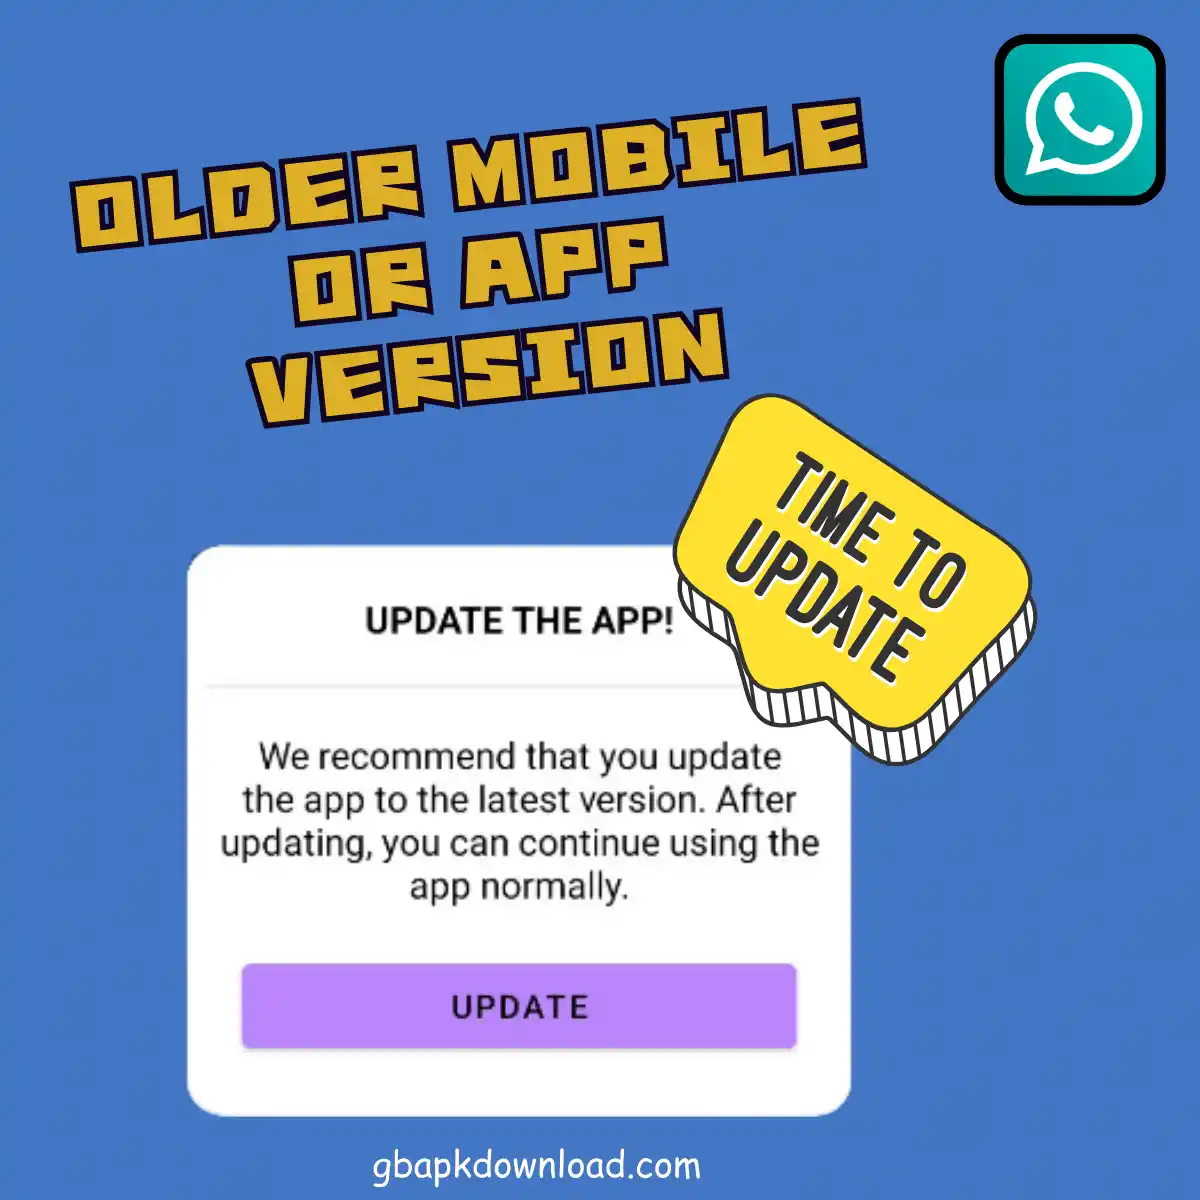 Older Mobile or App version 